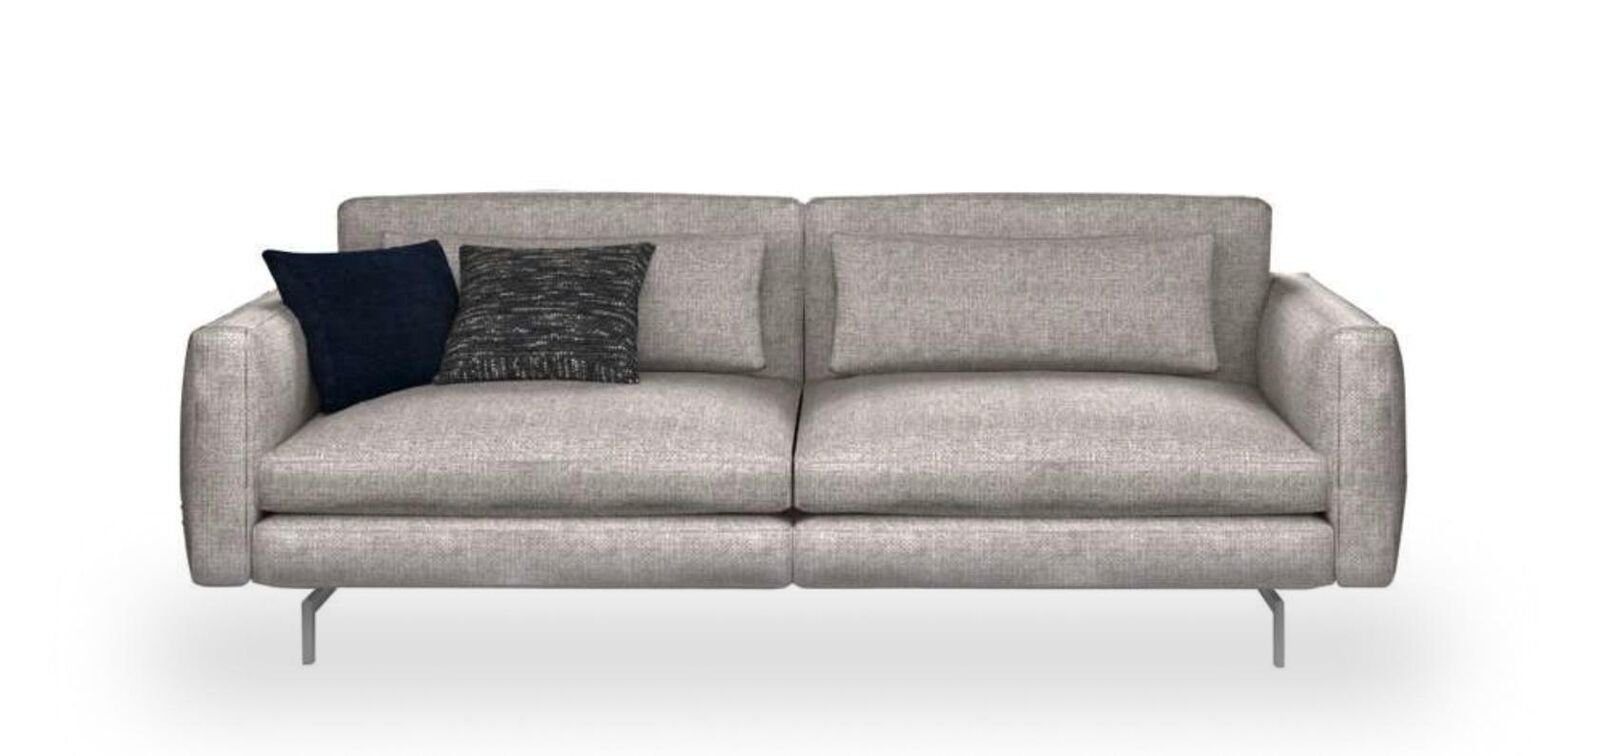 JVmoebel Sofa Wohnzimmermöbel Textil in Moderne Dreisitzer Teile, Europa Sofas, 1 Couch Made